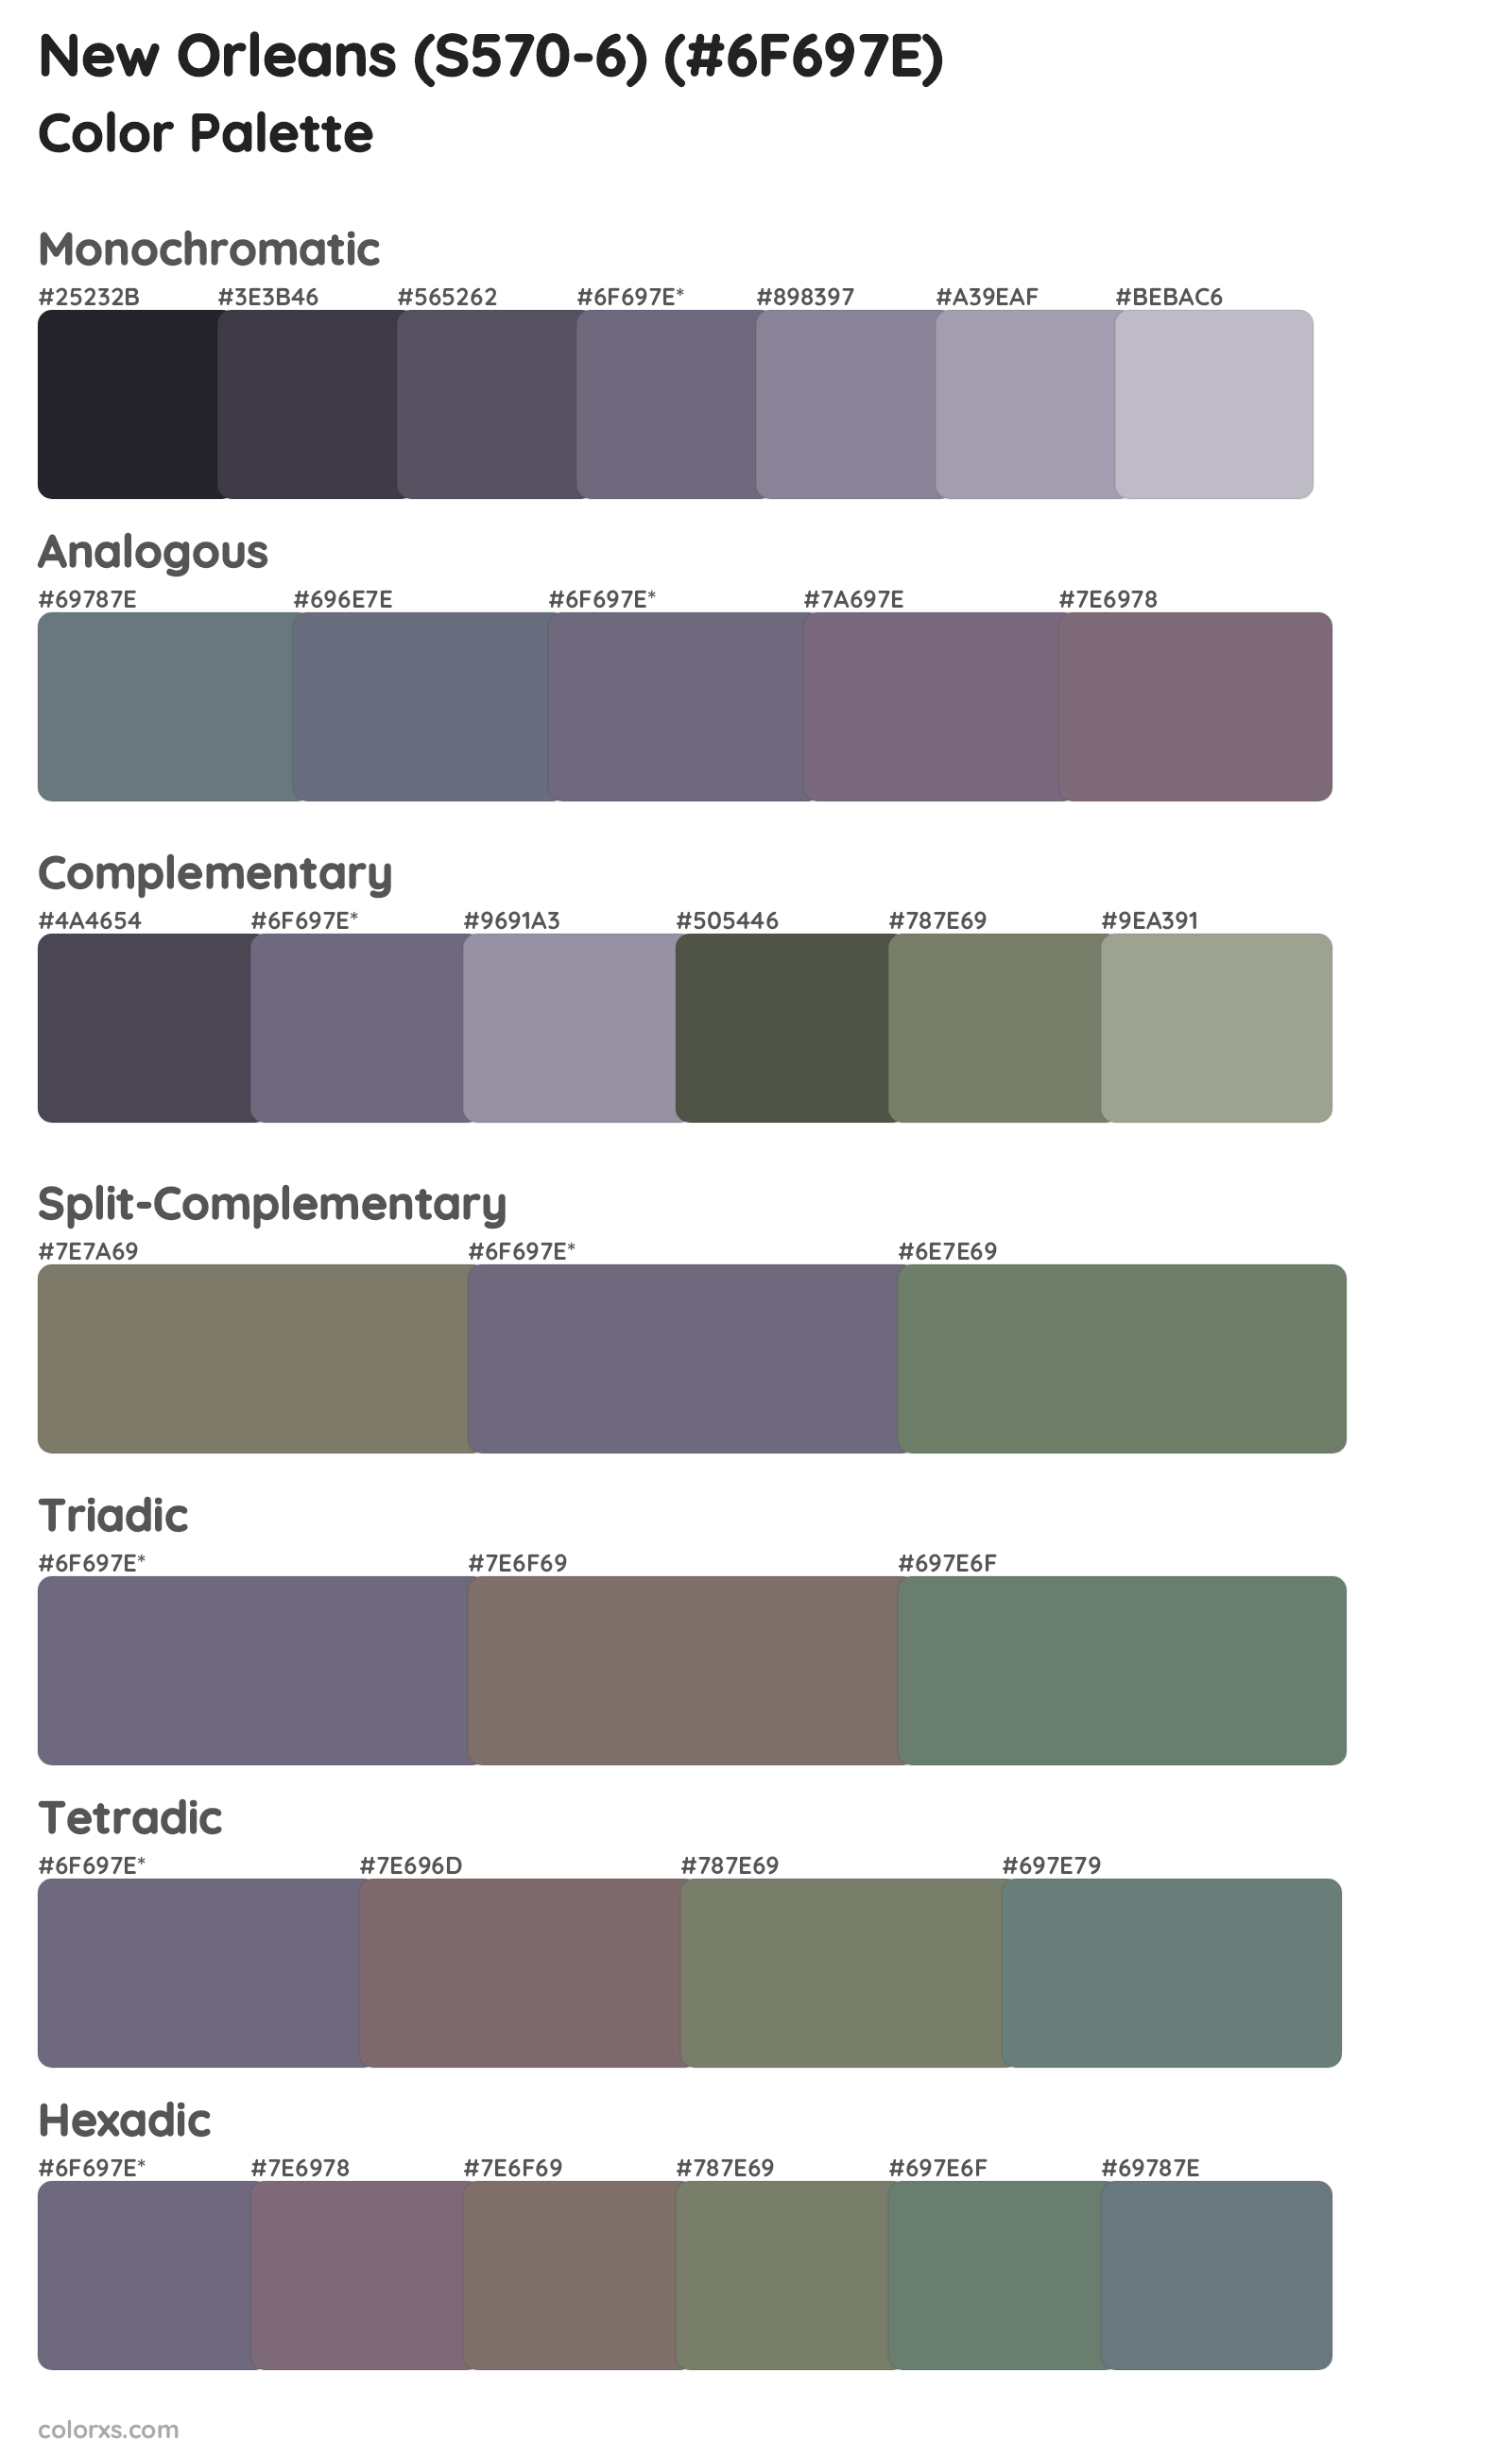 New Orleans (S570-6) Color Scheme Palettes